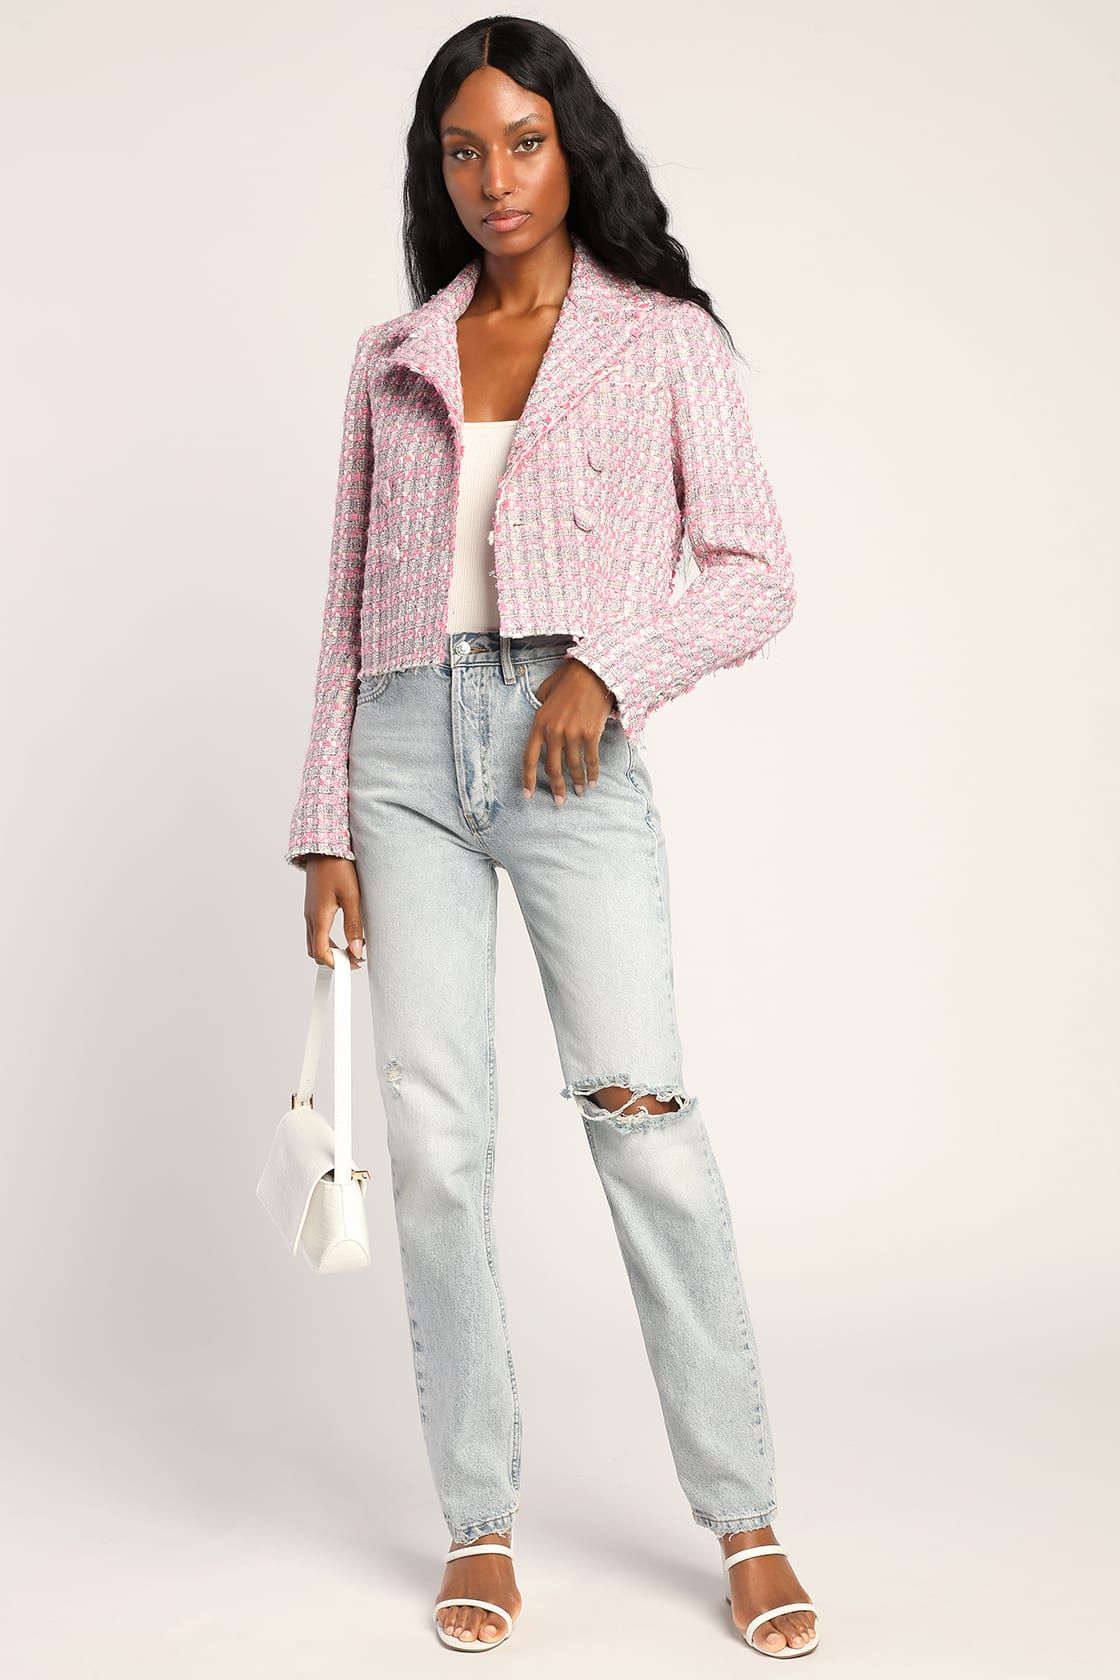 Tweed My Ego Pink Multi Tweed Cropped Blazer | Lulus (US)